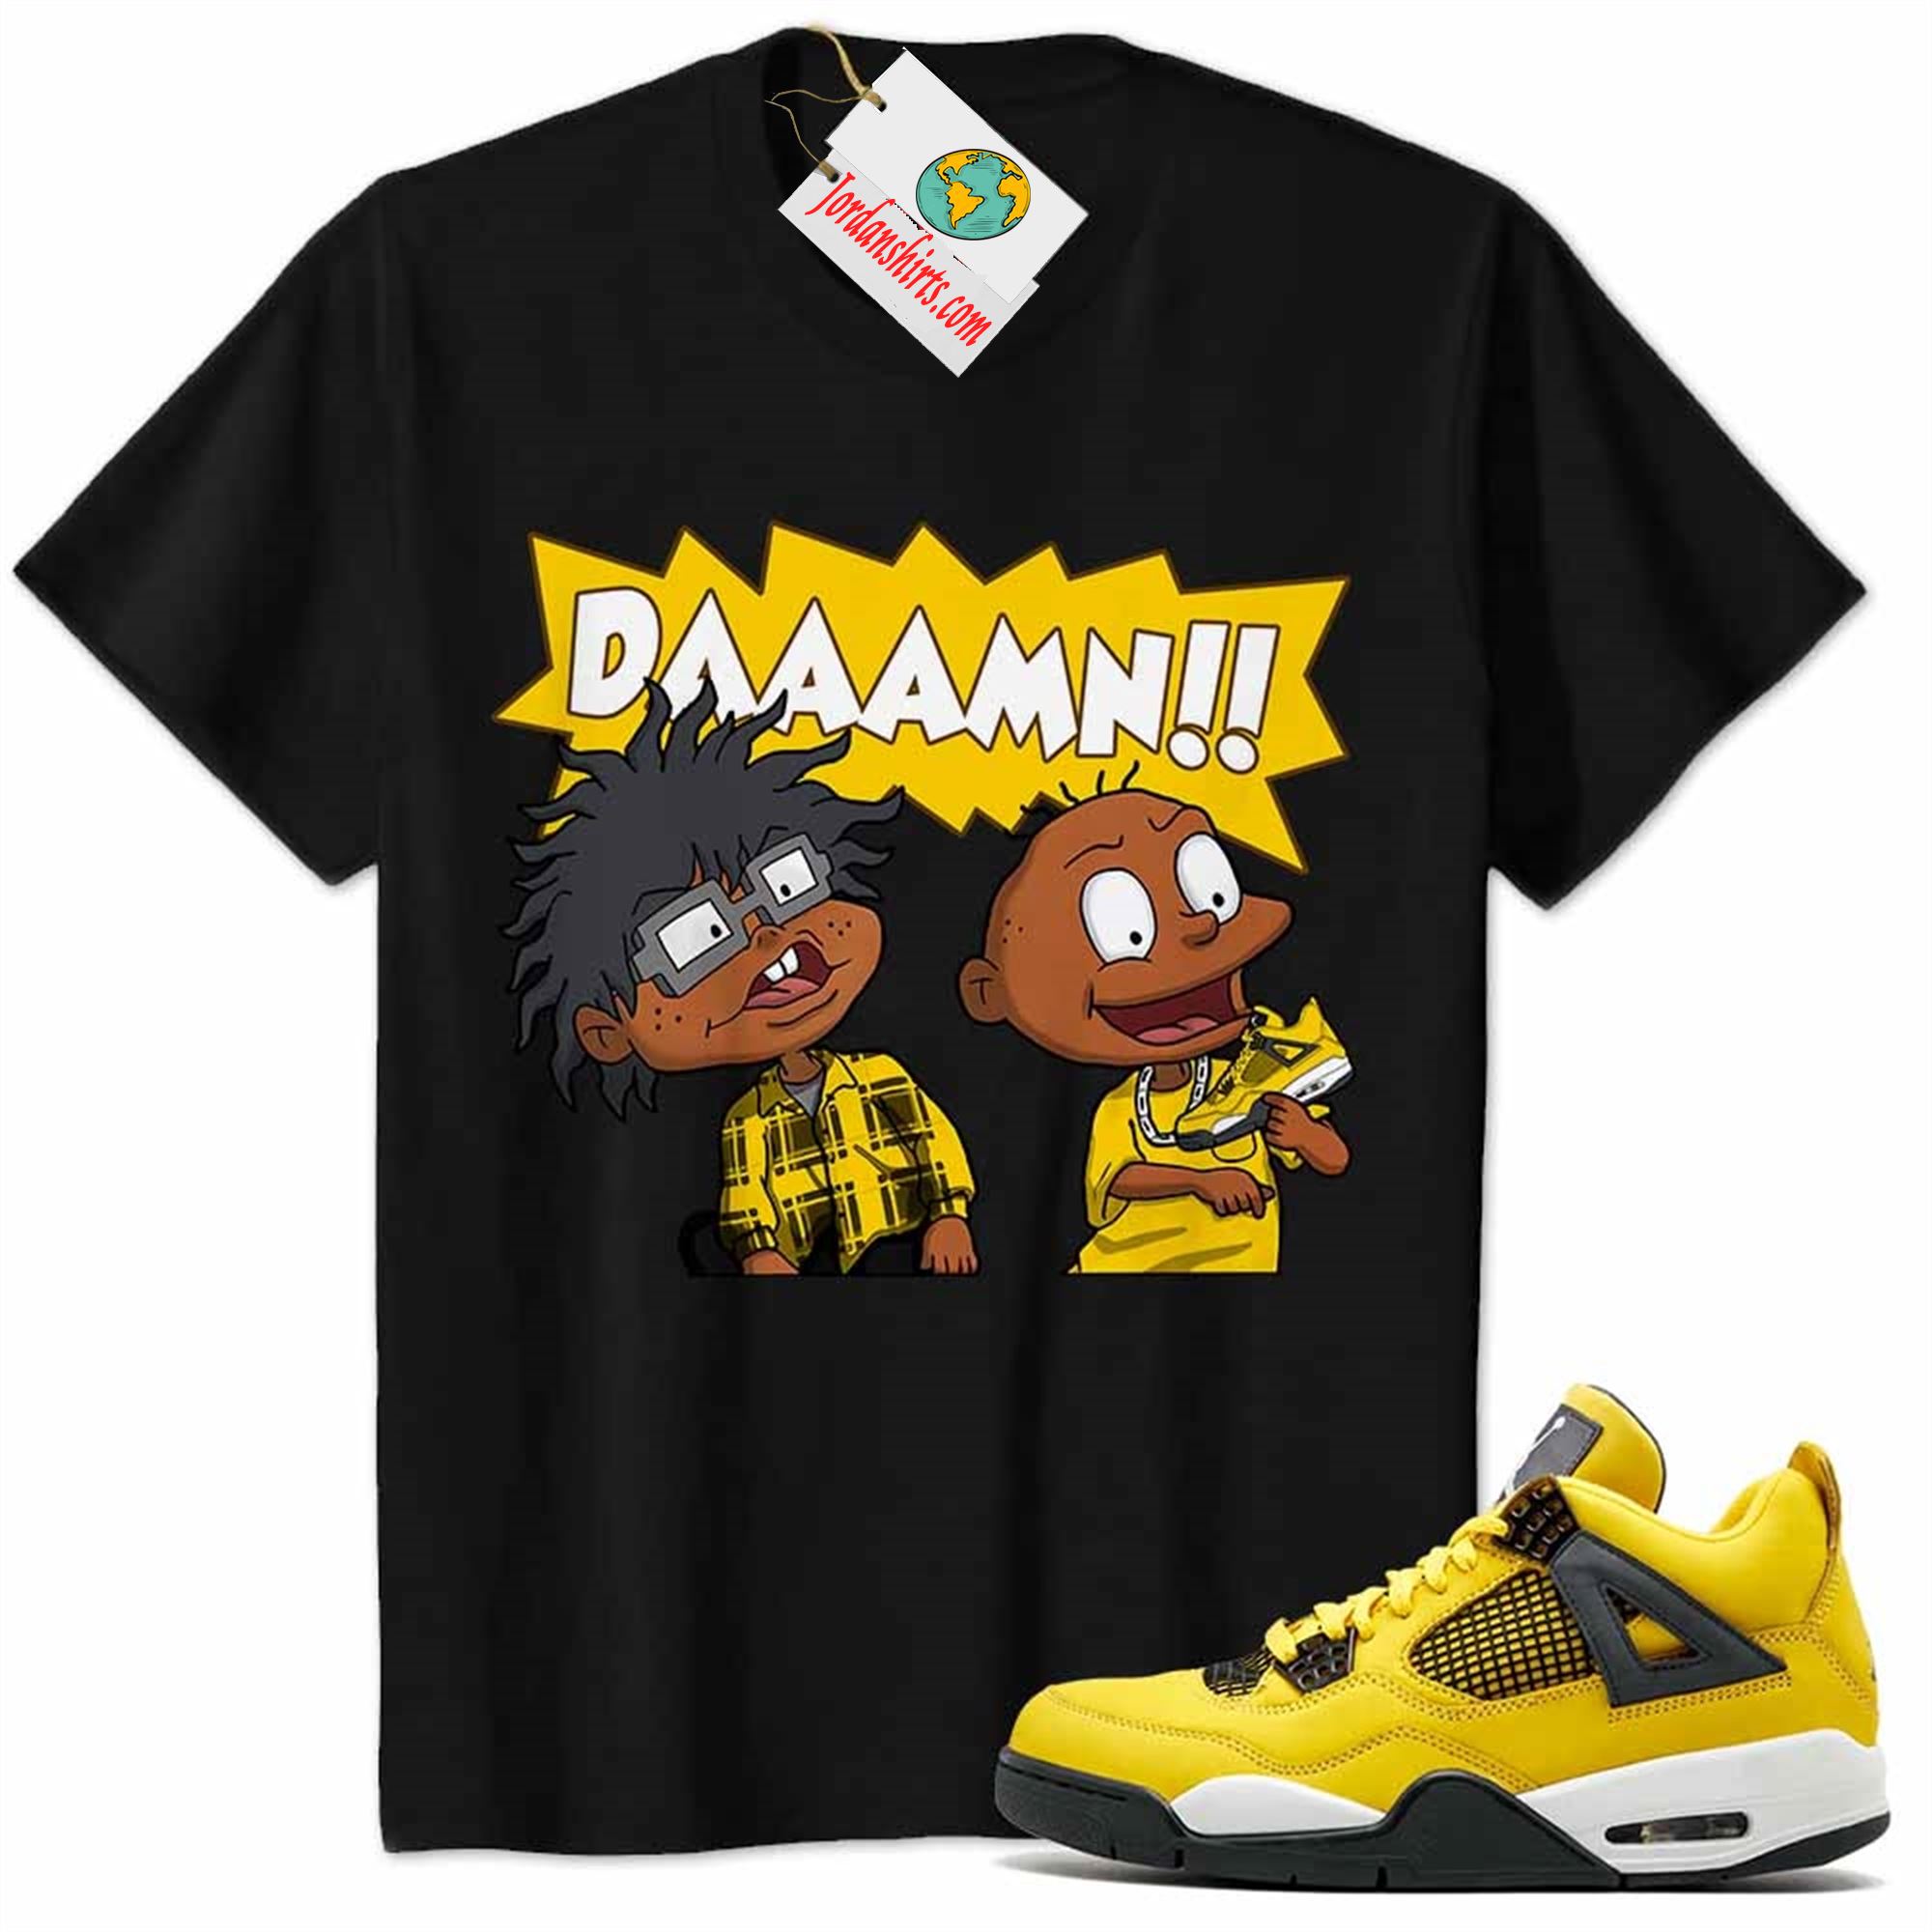 Jordan 4 Shirt, Damn Meme Smokey Rugrats Black Air Jordan 4 Tour Yellow Lightning 4s Size Up To 5xl